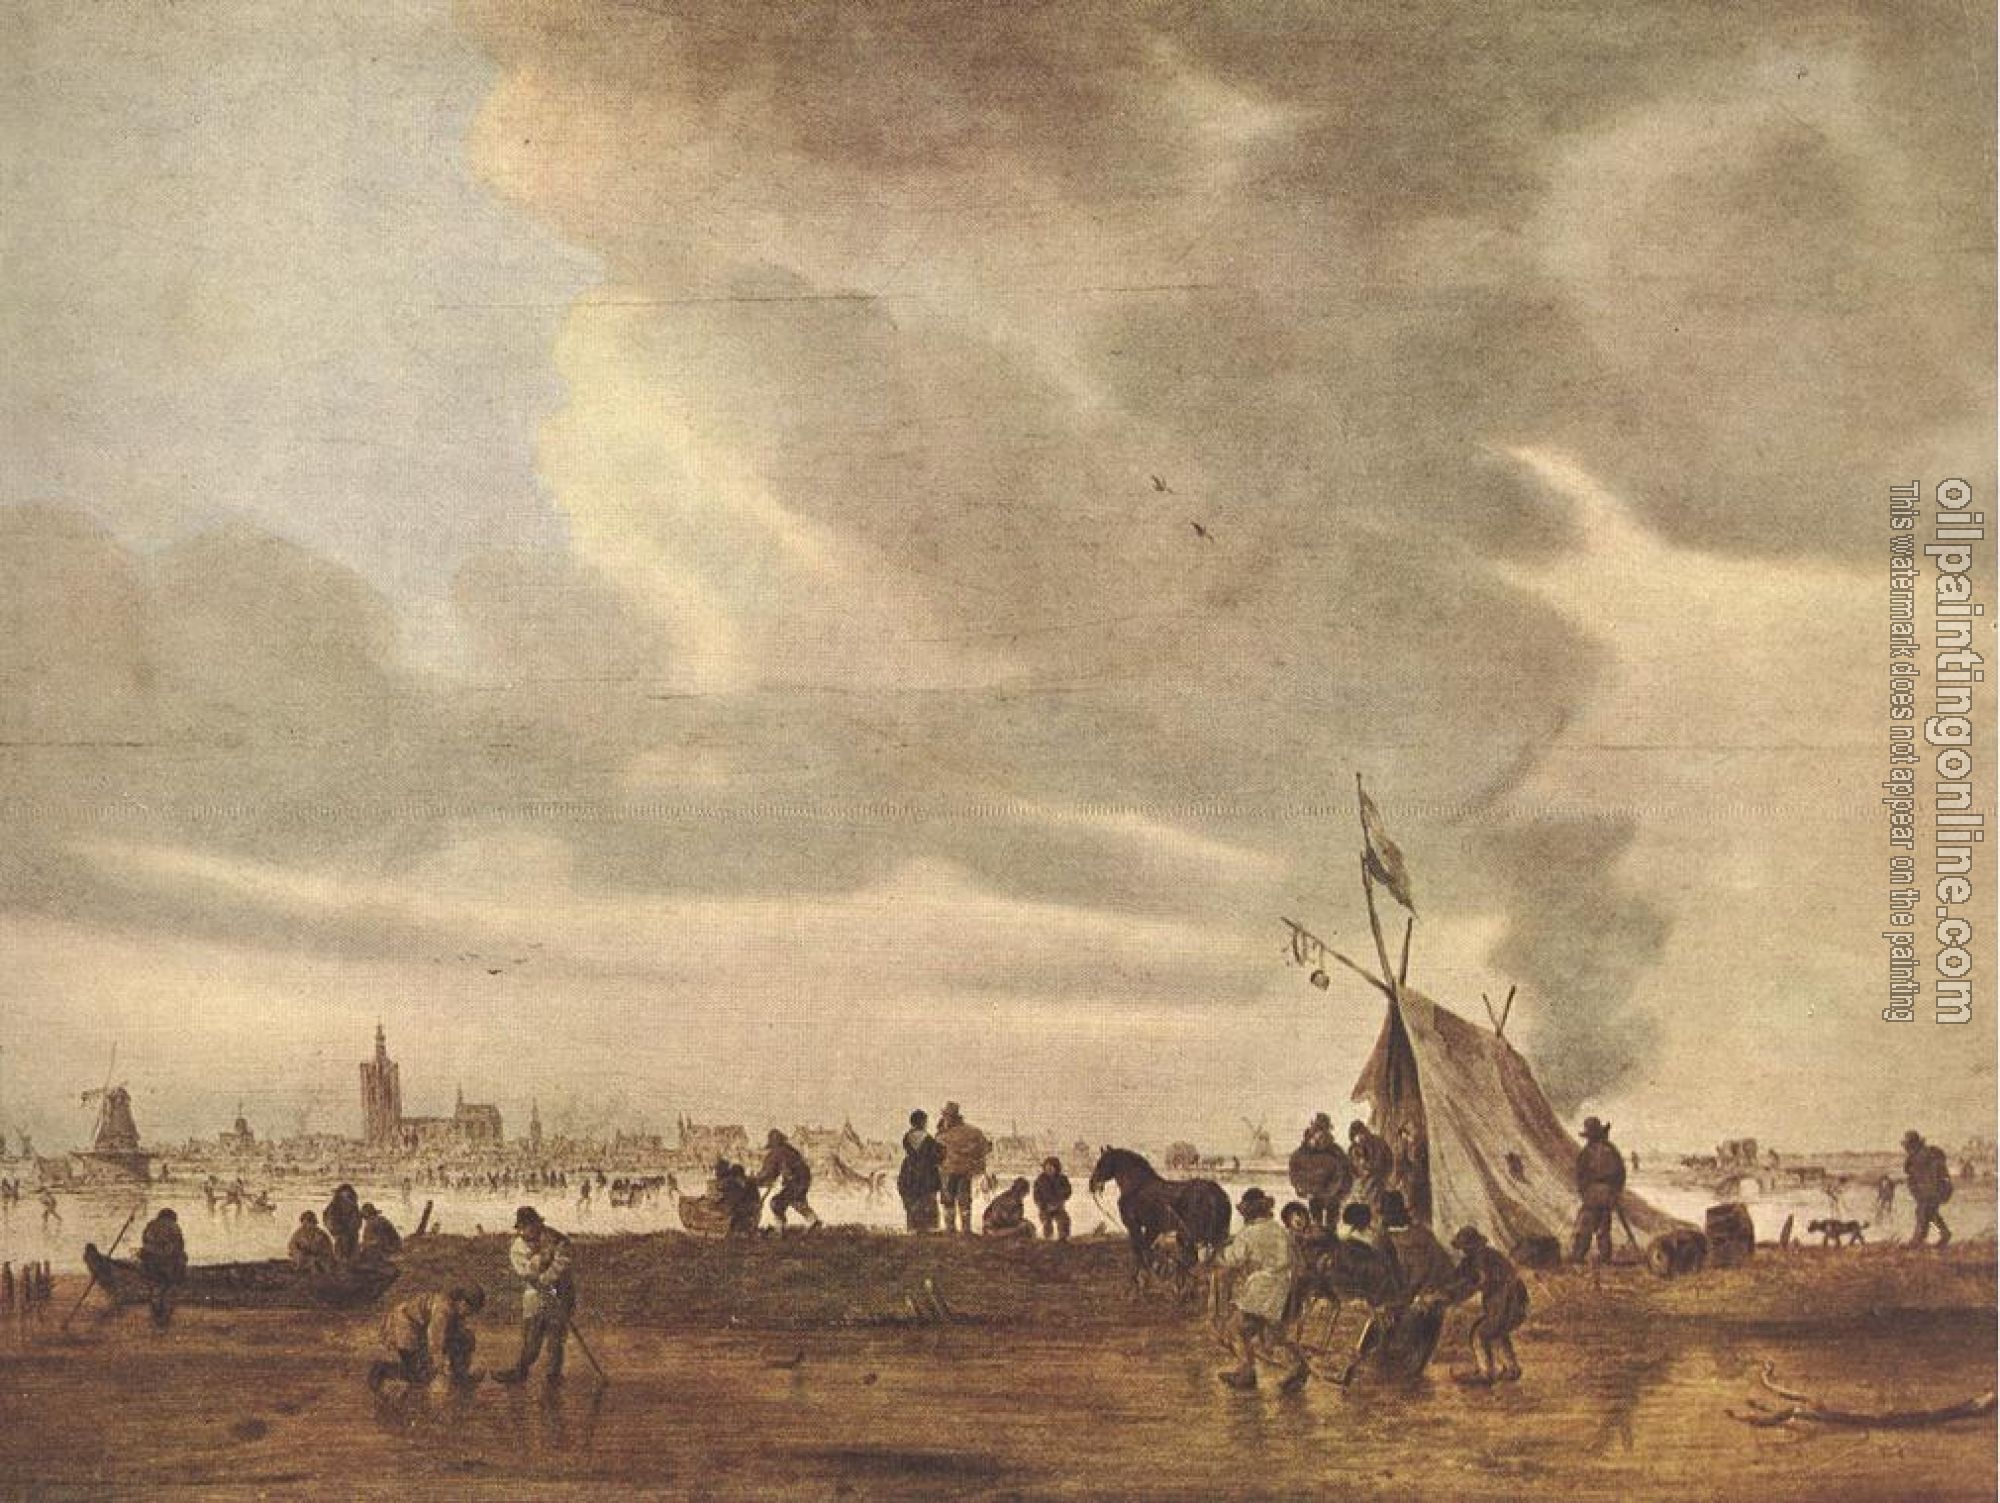 Goyen, Jan van - View of The Hague in Winter